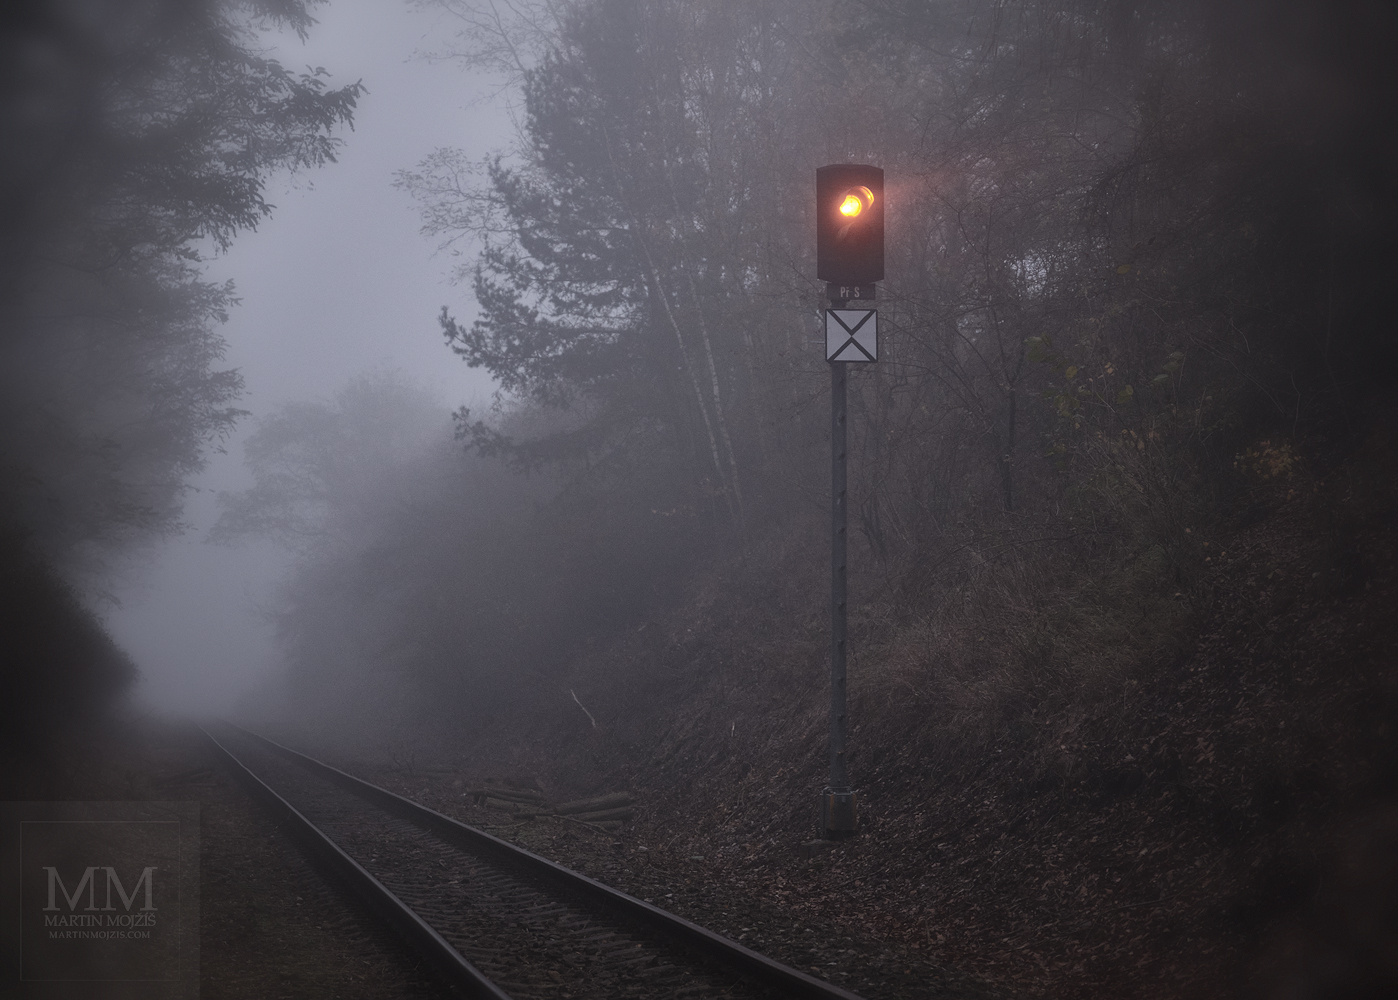 Railway traffic light at a one rail track shining in a foggy twilight.